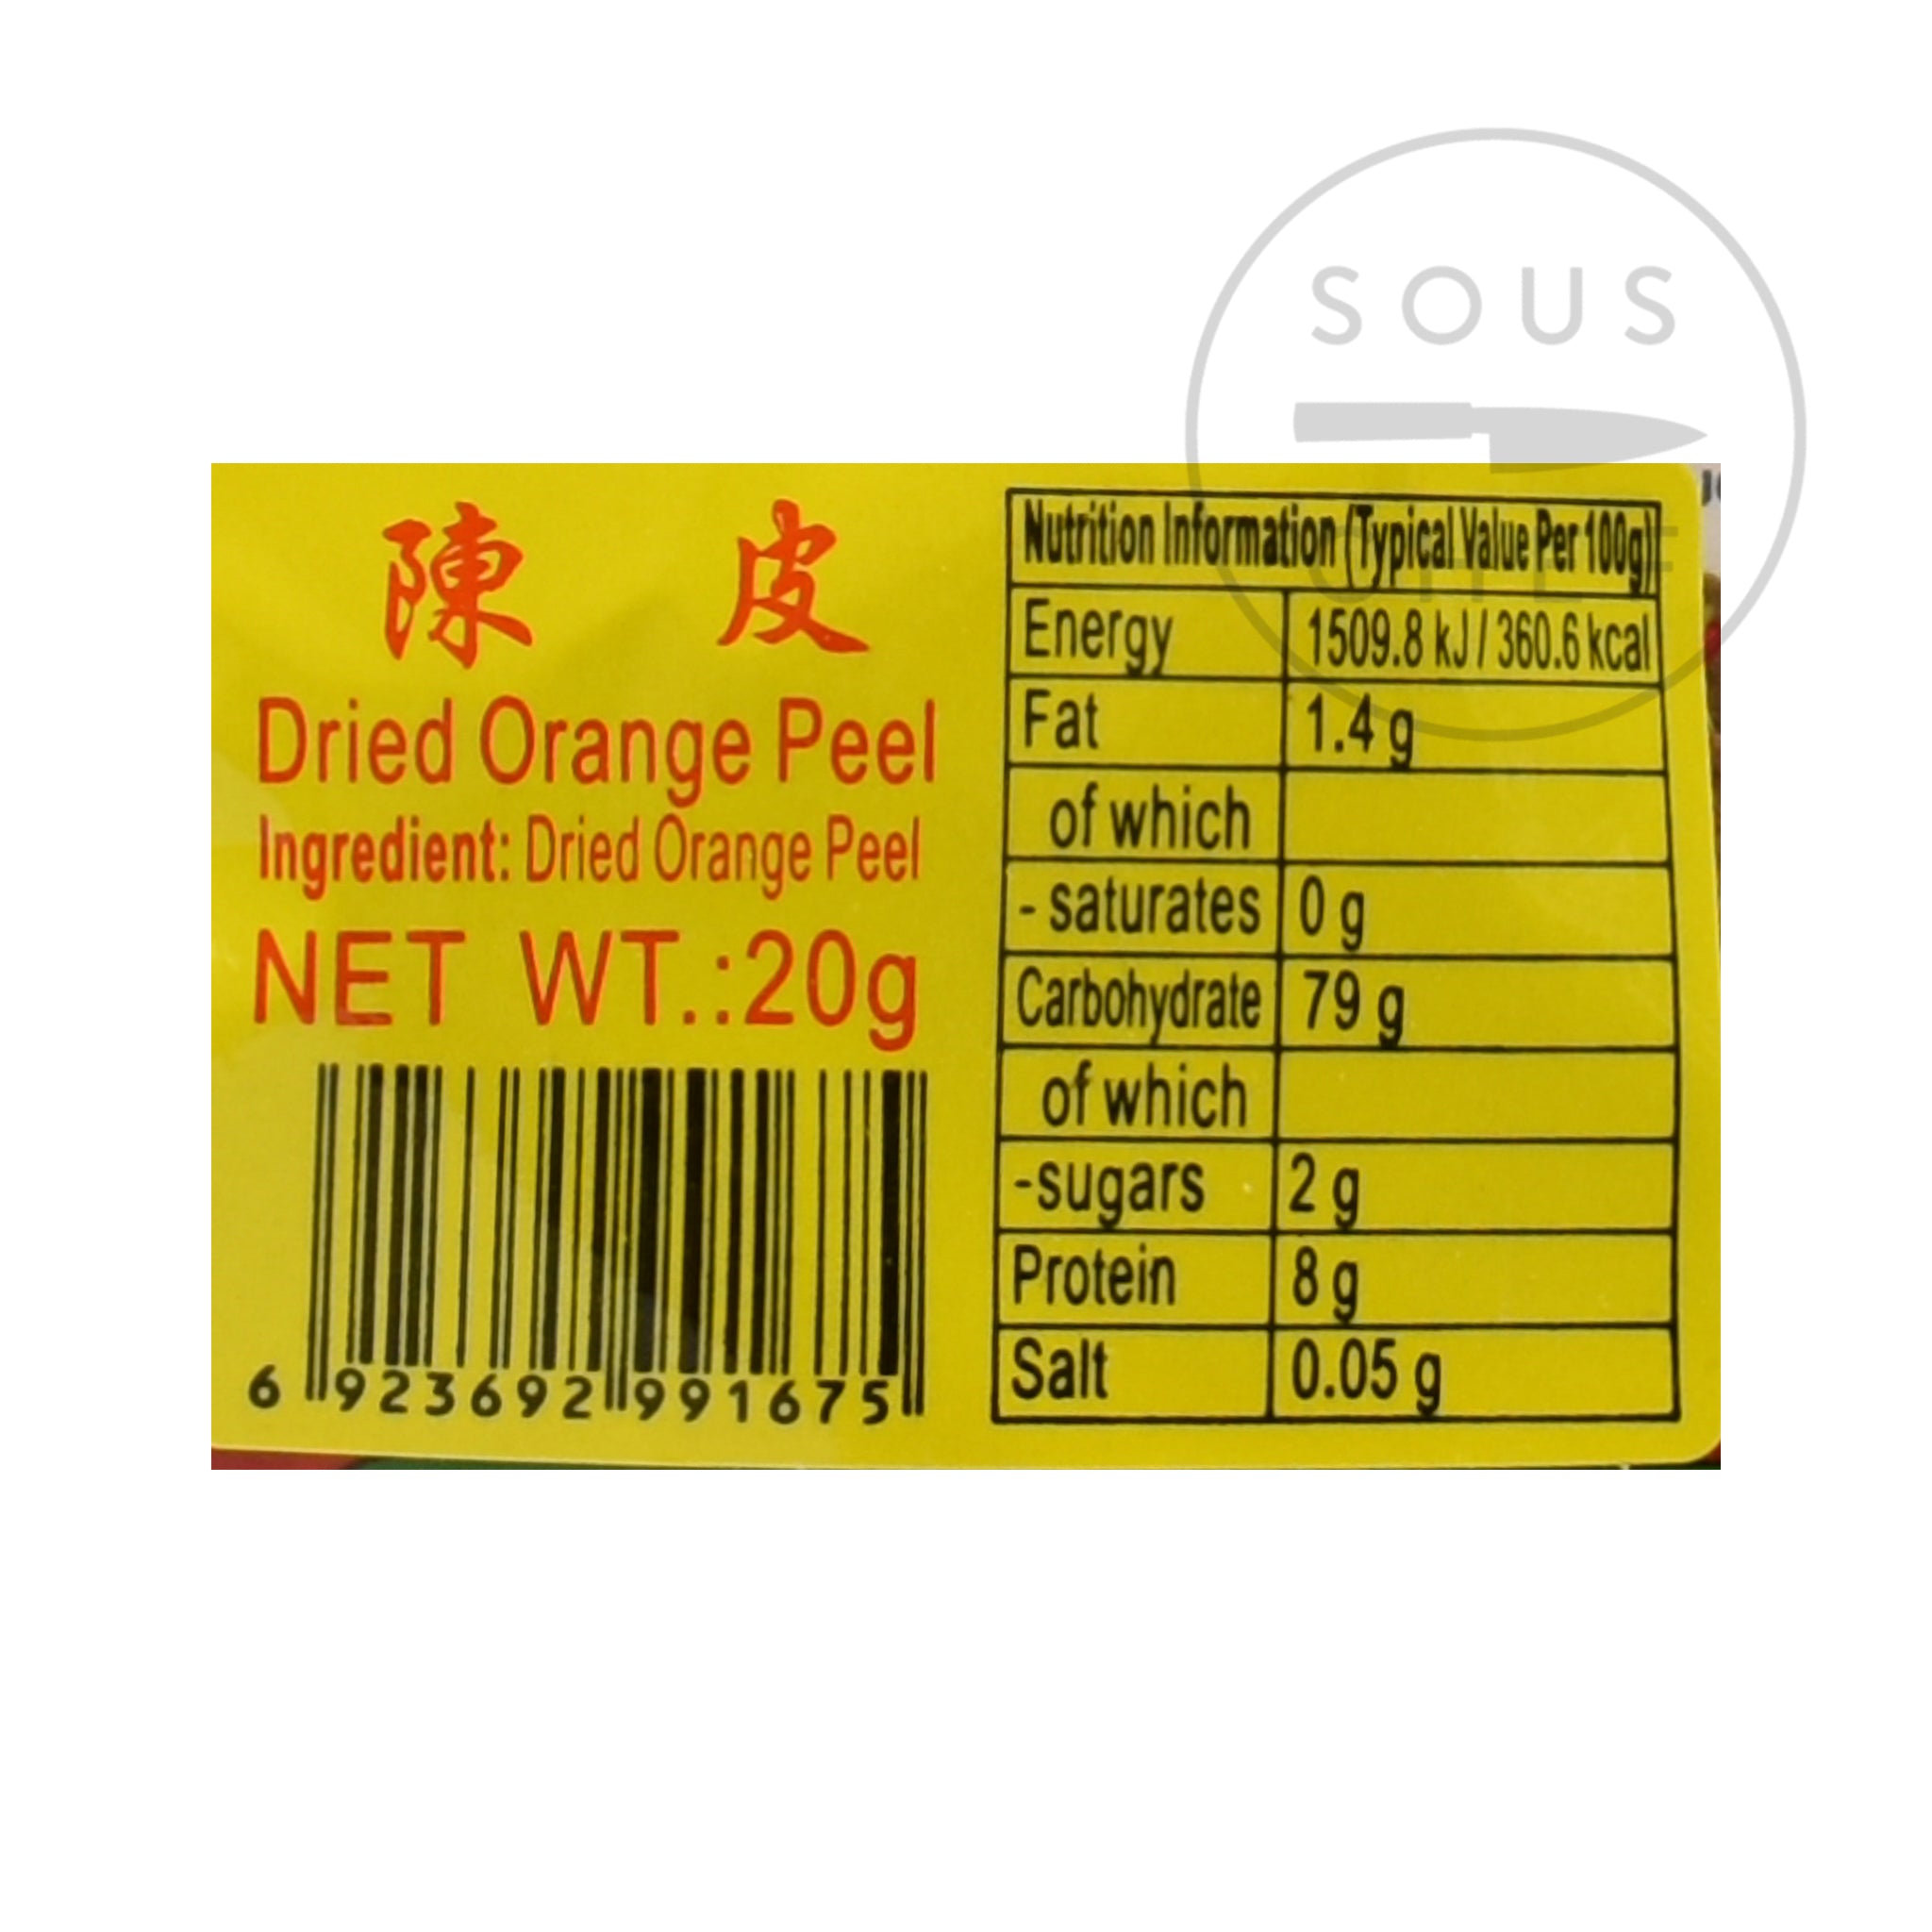 Dried Orange Peel nutritional information ingredients